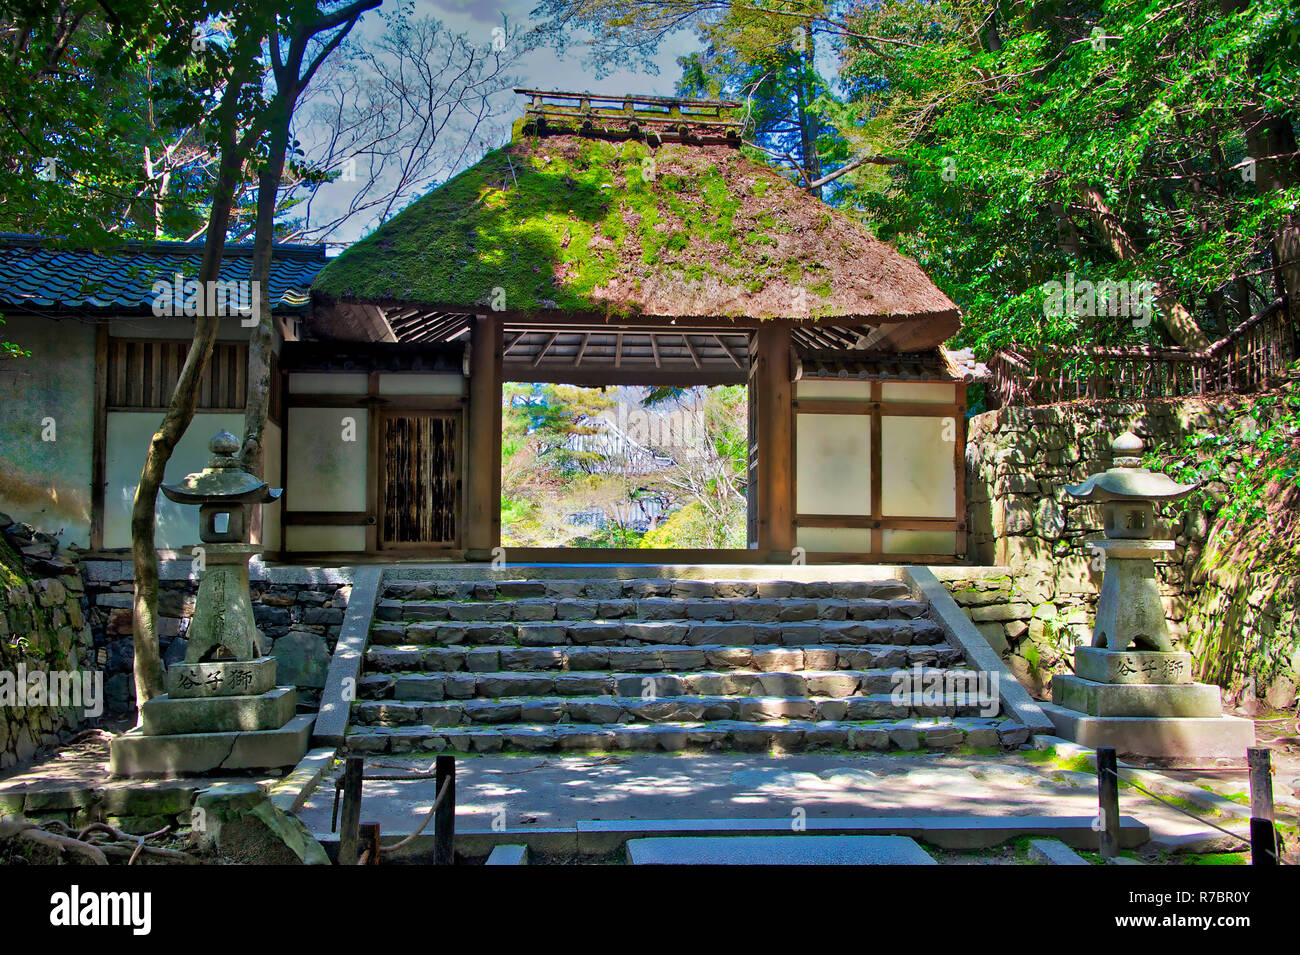 Ehemalige Hauptstadt von Japan, Kyoto ist berühmt für seine Tempel und Schreine Stockfoto